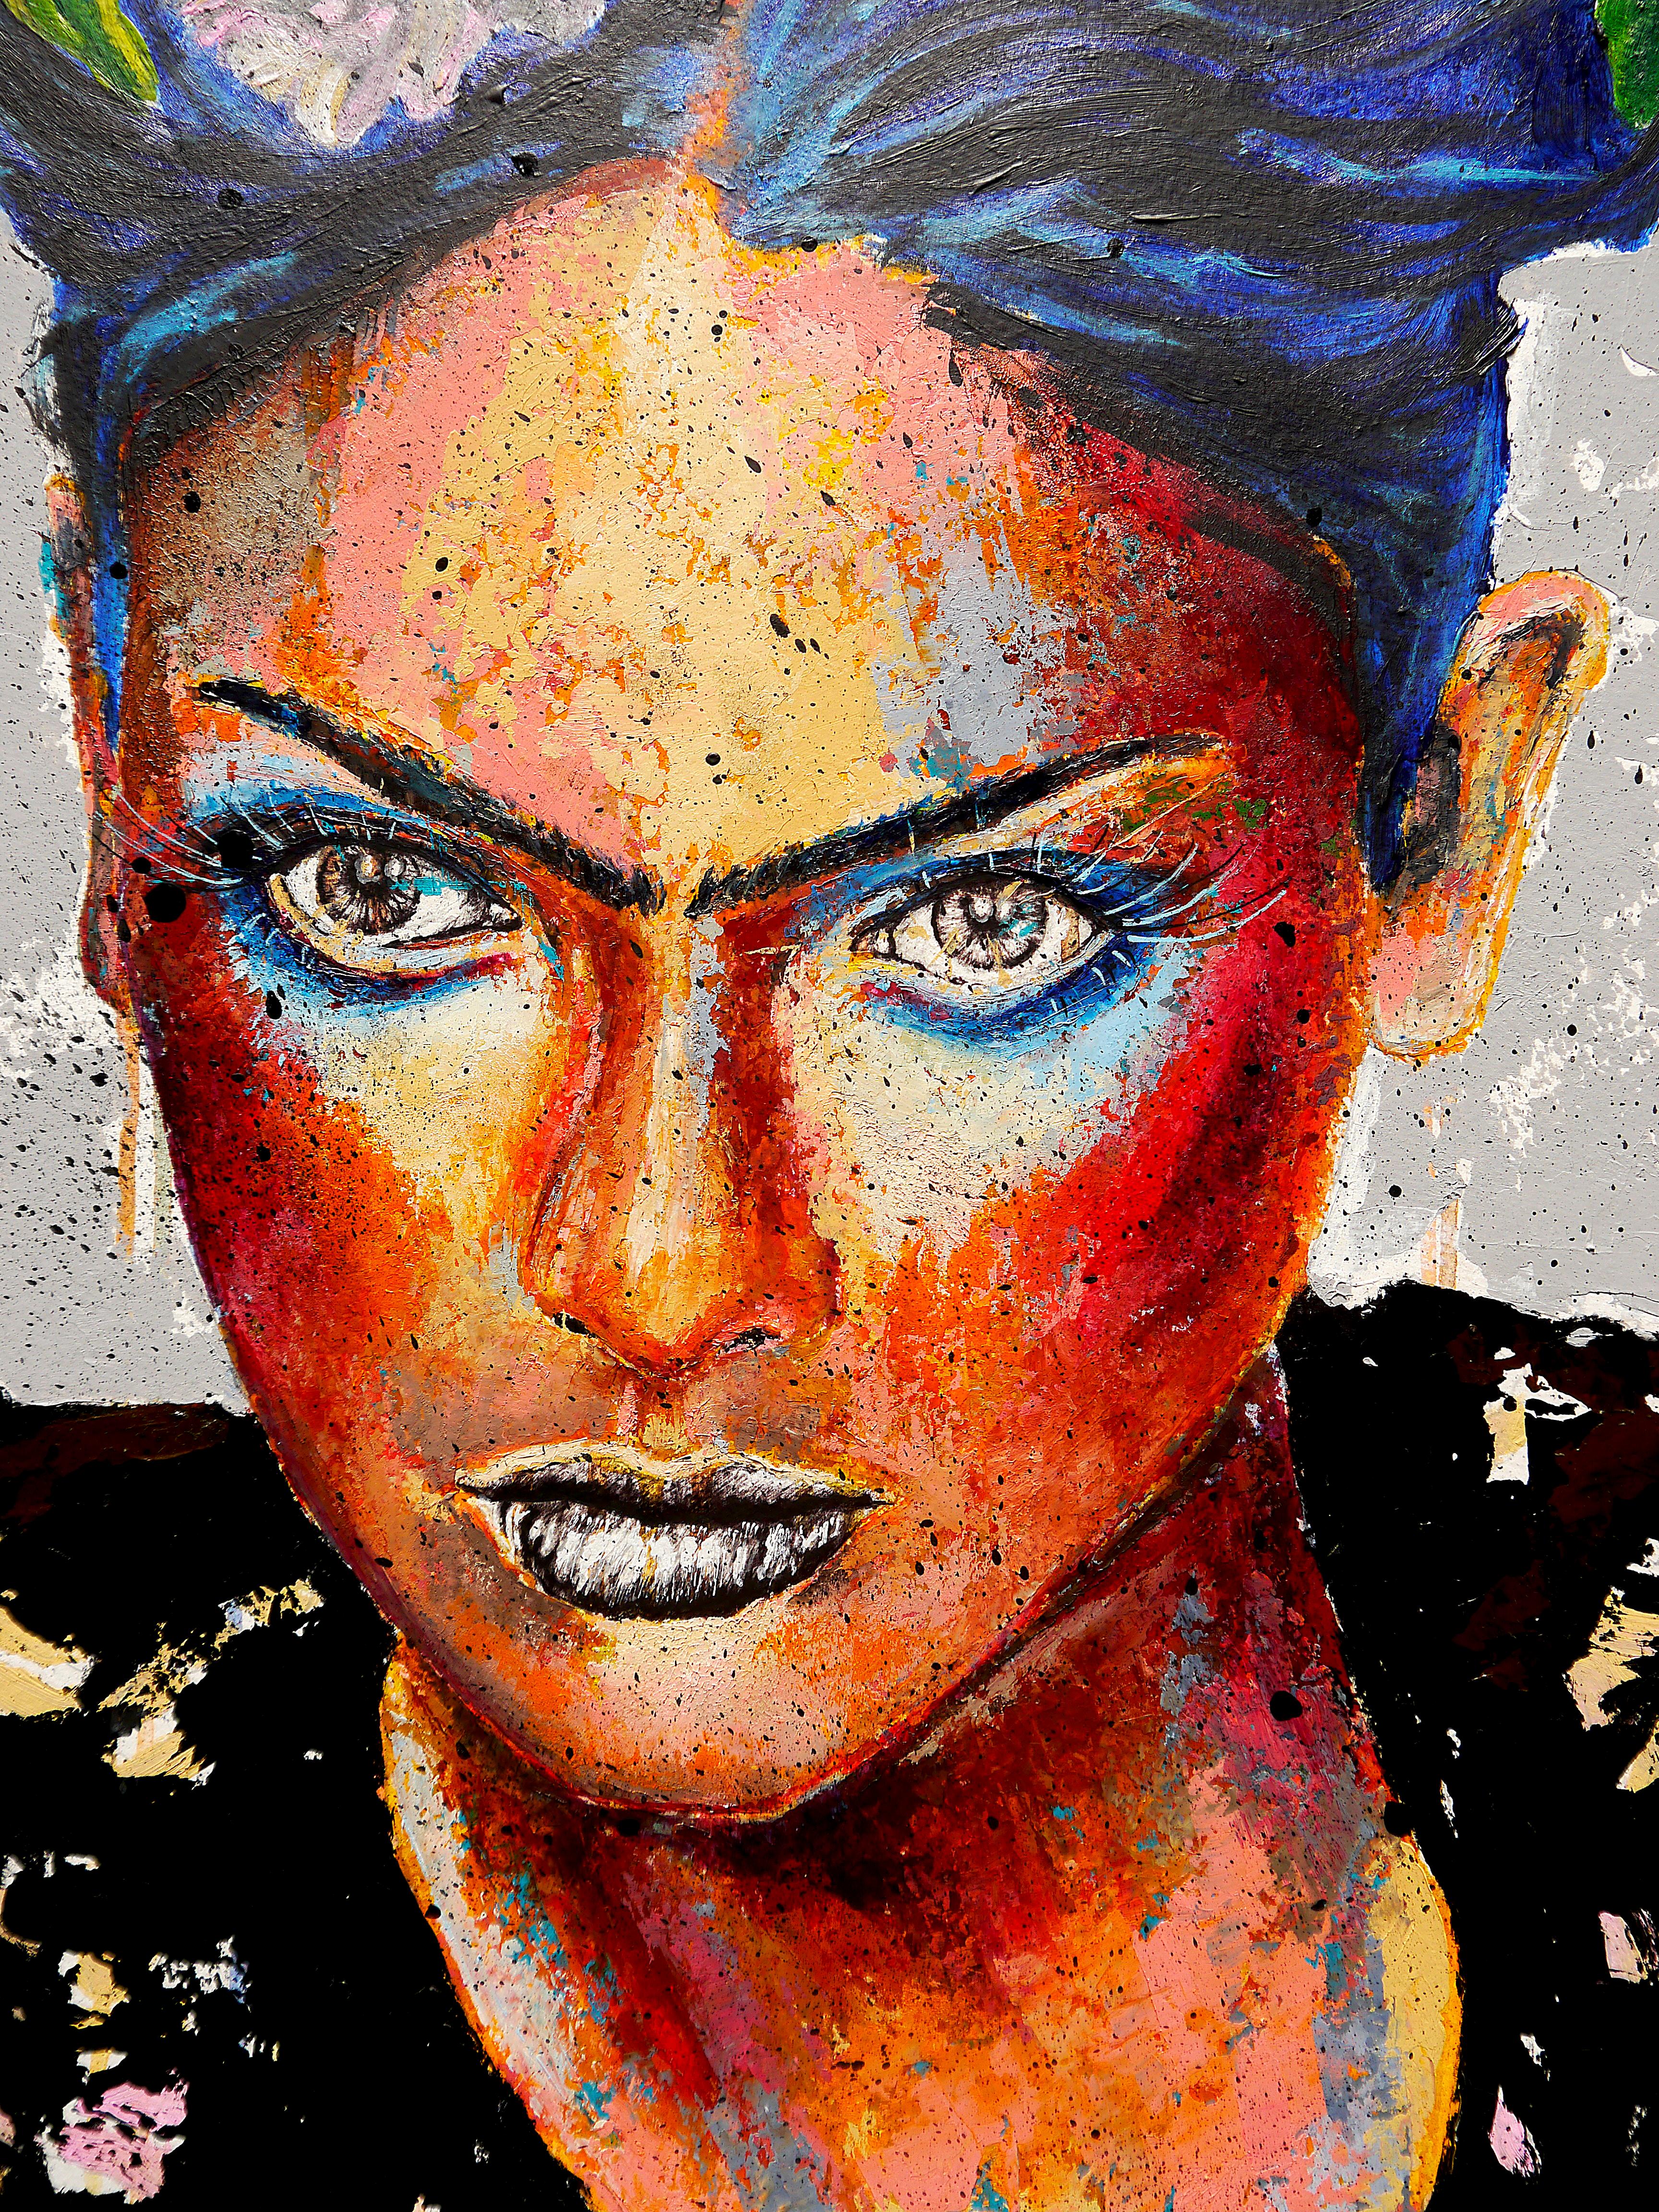 Portrait 22 PS 19 Frida on Fire

Portrait de l'artiste Frida Kahlo aux cheveux bleus

Technique : huile, acrylique et stylo à bille sur papier monté sur bois 64 x 49cm (25,2x19,3 inch) avec cadre noir 72x57cm (28,3x22,4inch)

Durabilité :  Dans une